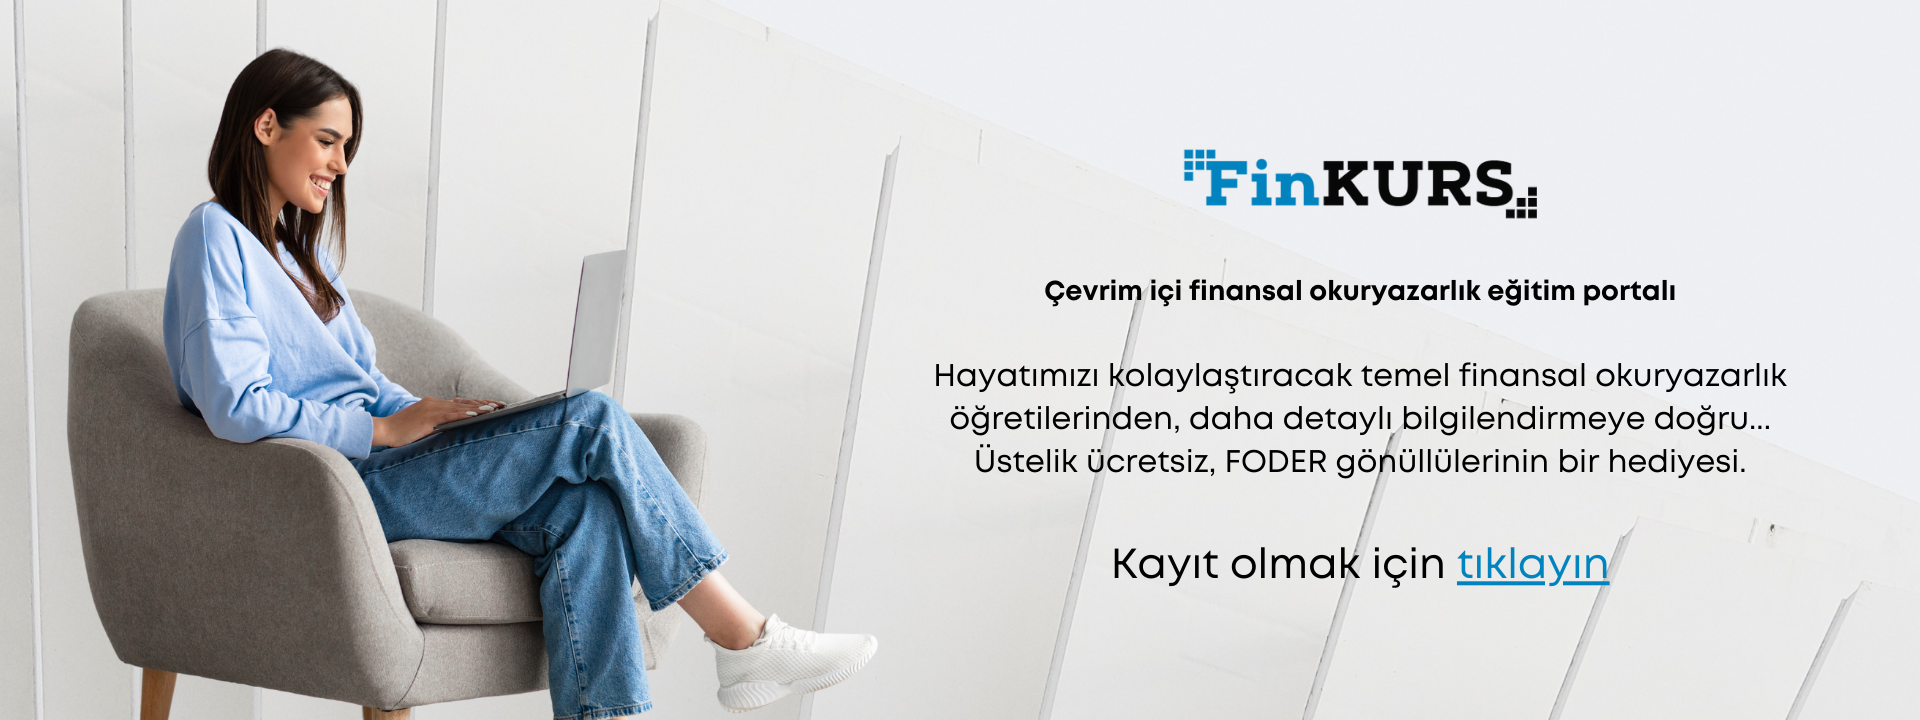 finkurs web banner